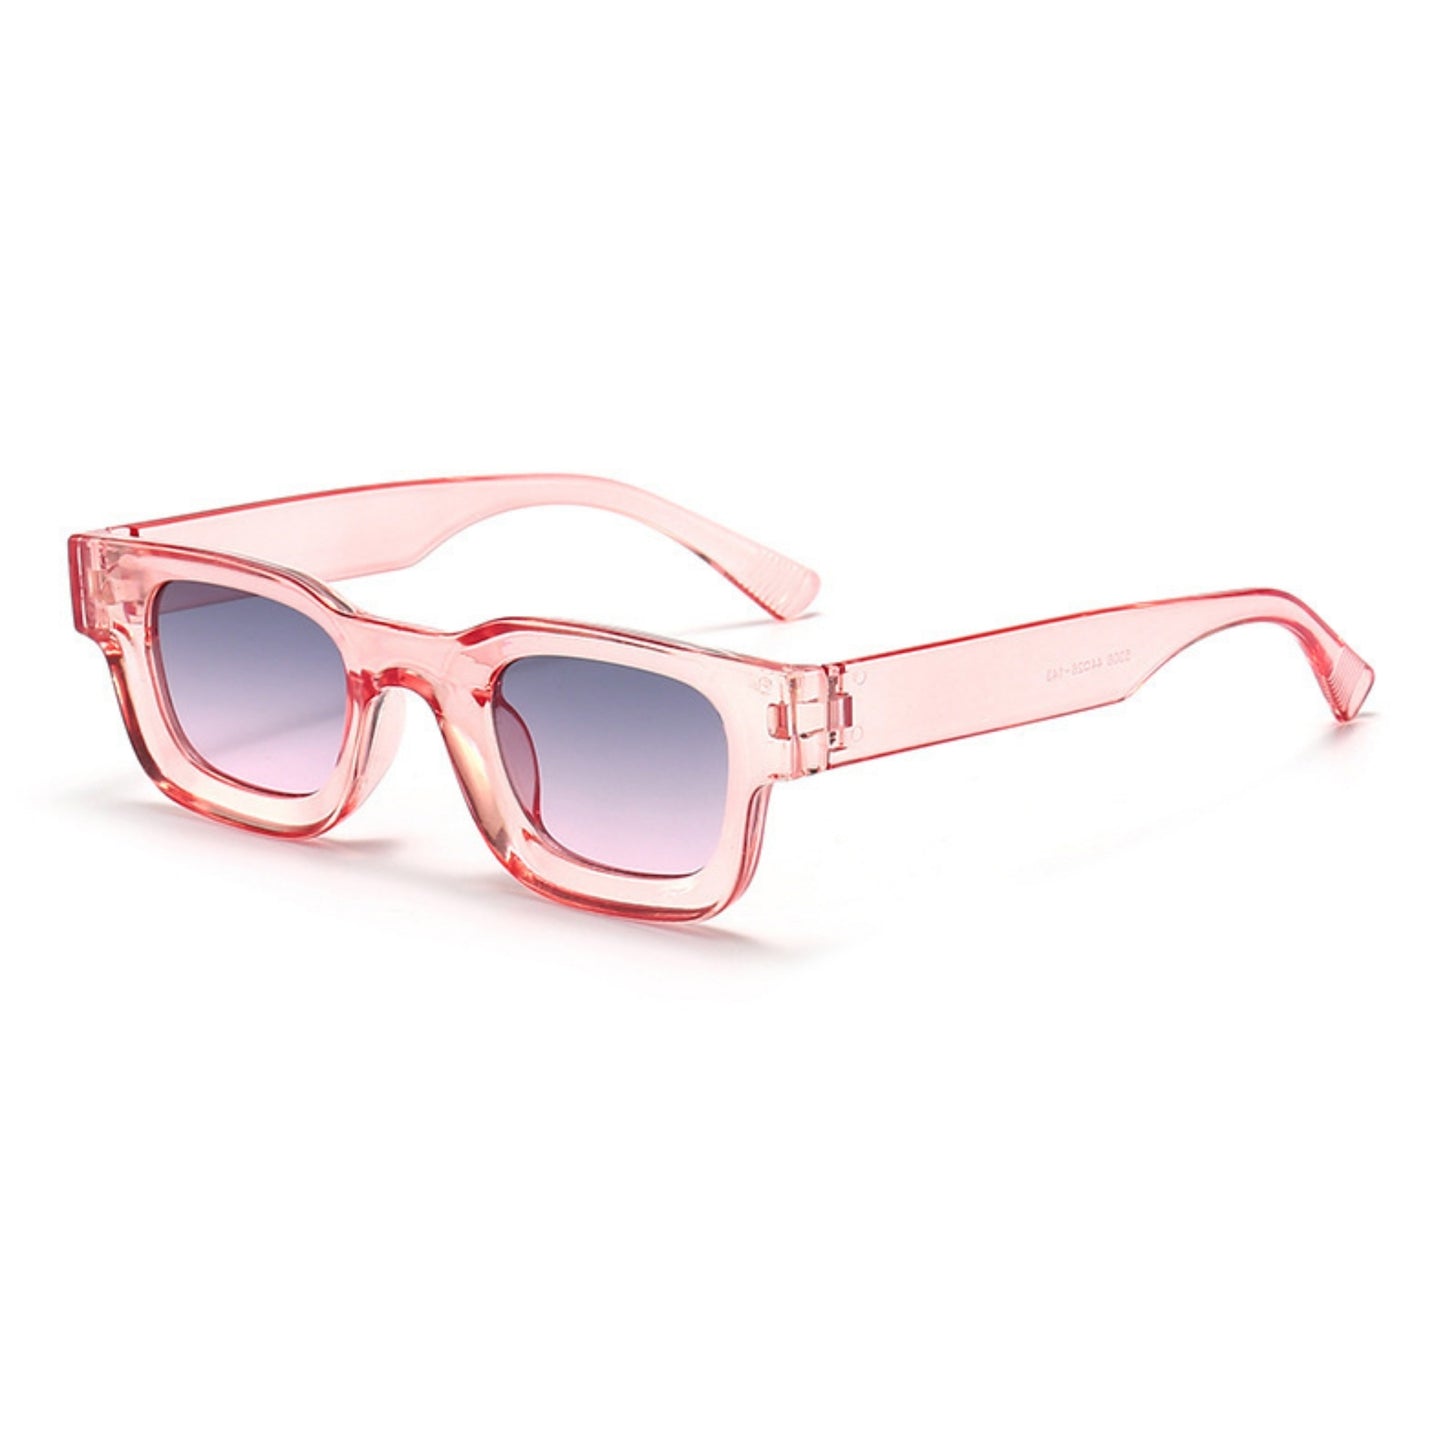 Τετράγωνα Γυαλιά ηλίου Taf από την Exposure Sunglasses με προστασία UV400 με ροζ σκελετό και μπλε φακό.Πλαινή όψη.